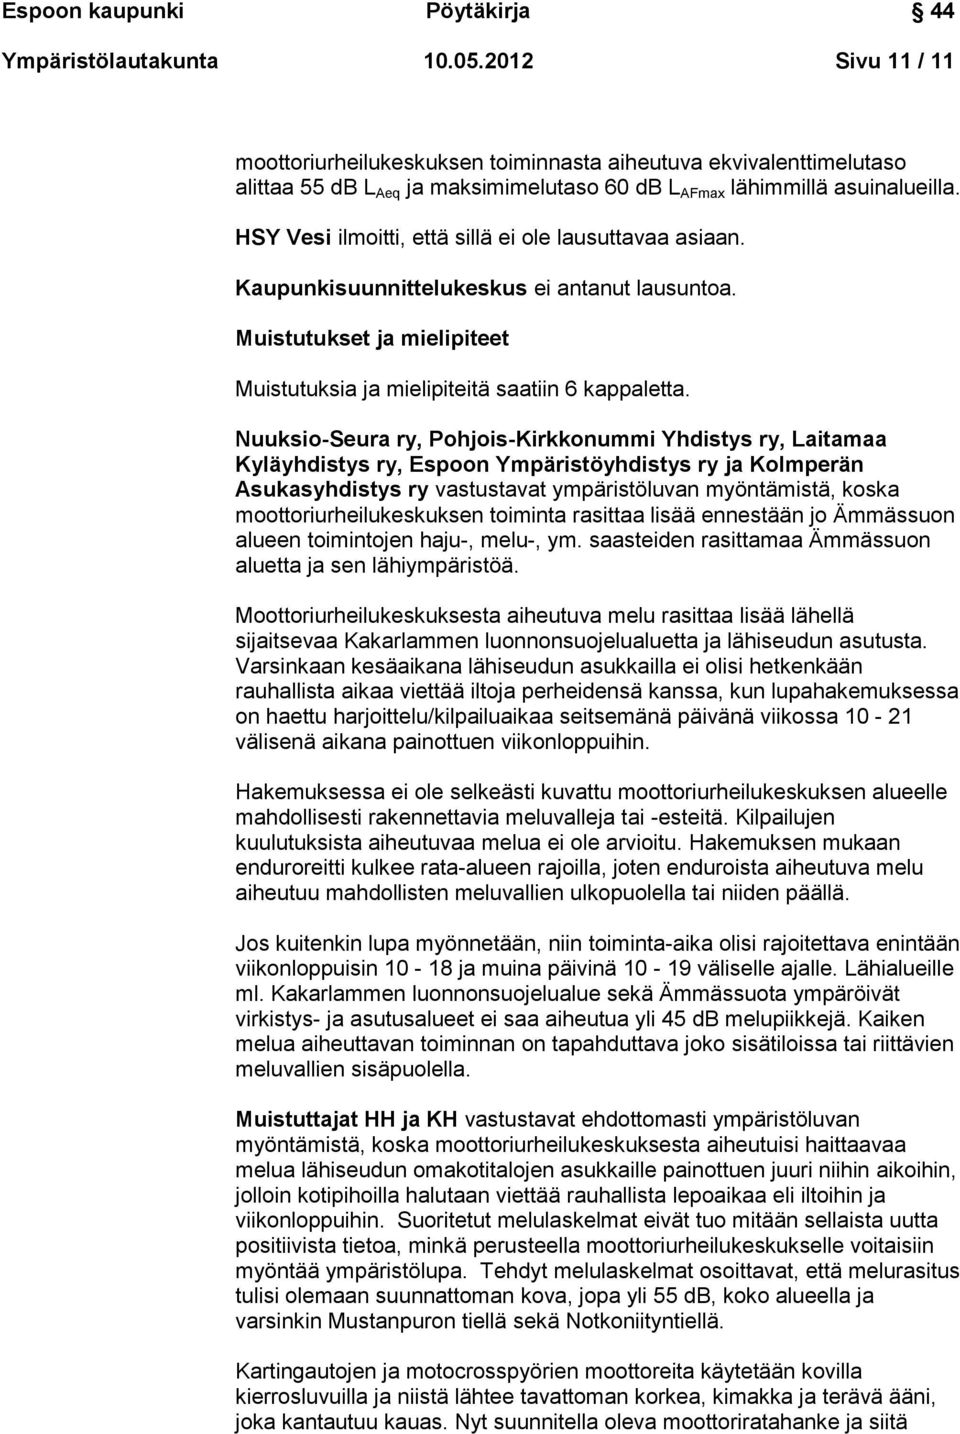 Nuuksio-Seura ry, Pohjois-Kirkkonummi Yhdistys ry, Laitamaa Kyläyhdistys ry, Espoon Ympäristöyhdistys ry ja Kolmperän Asukasyhdistys ry vastustavat ympäristöluvan myöntämistä, koska